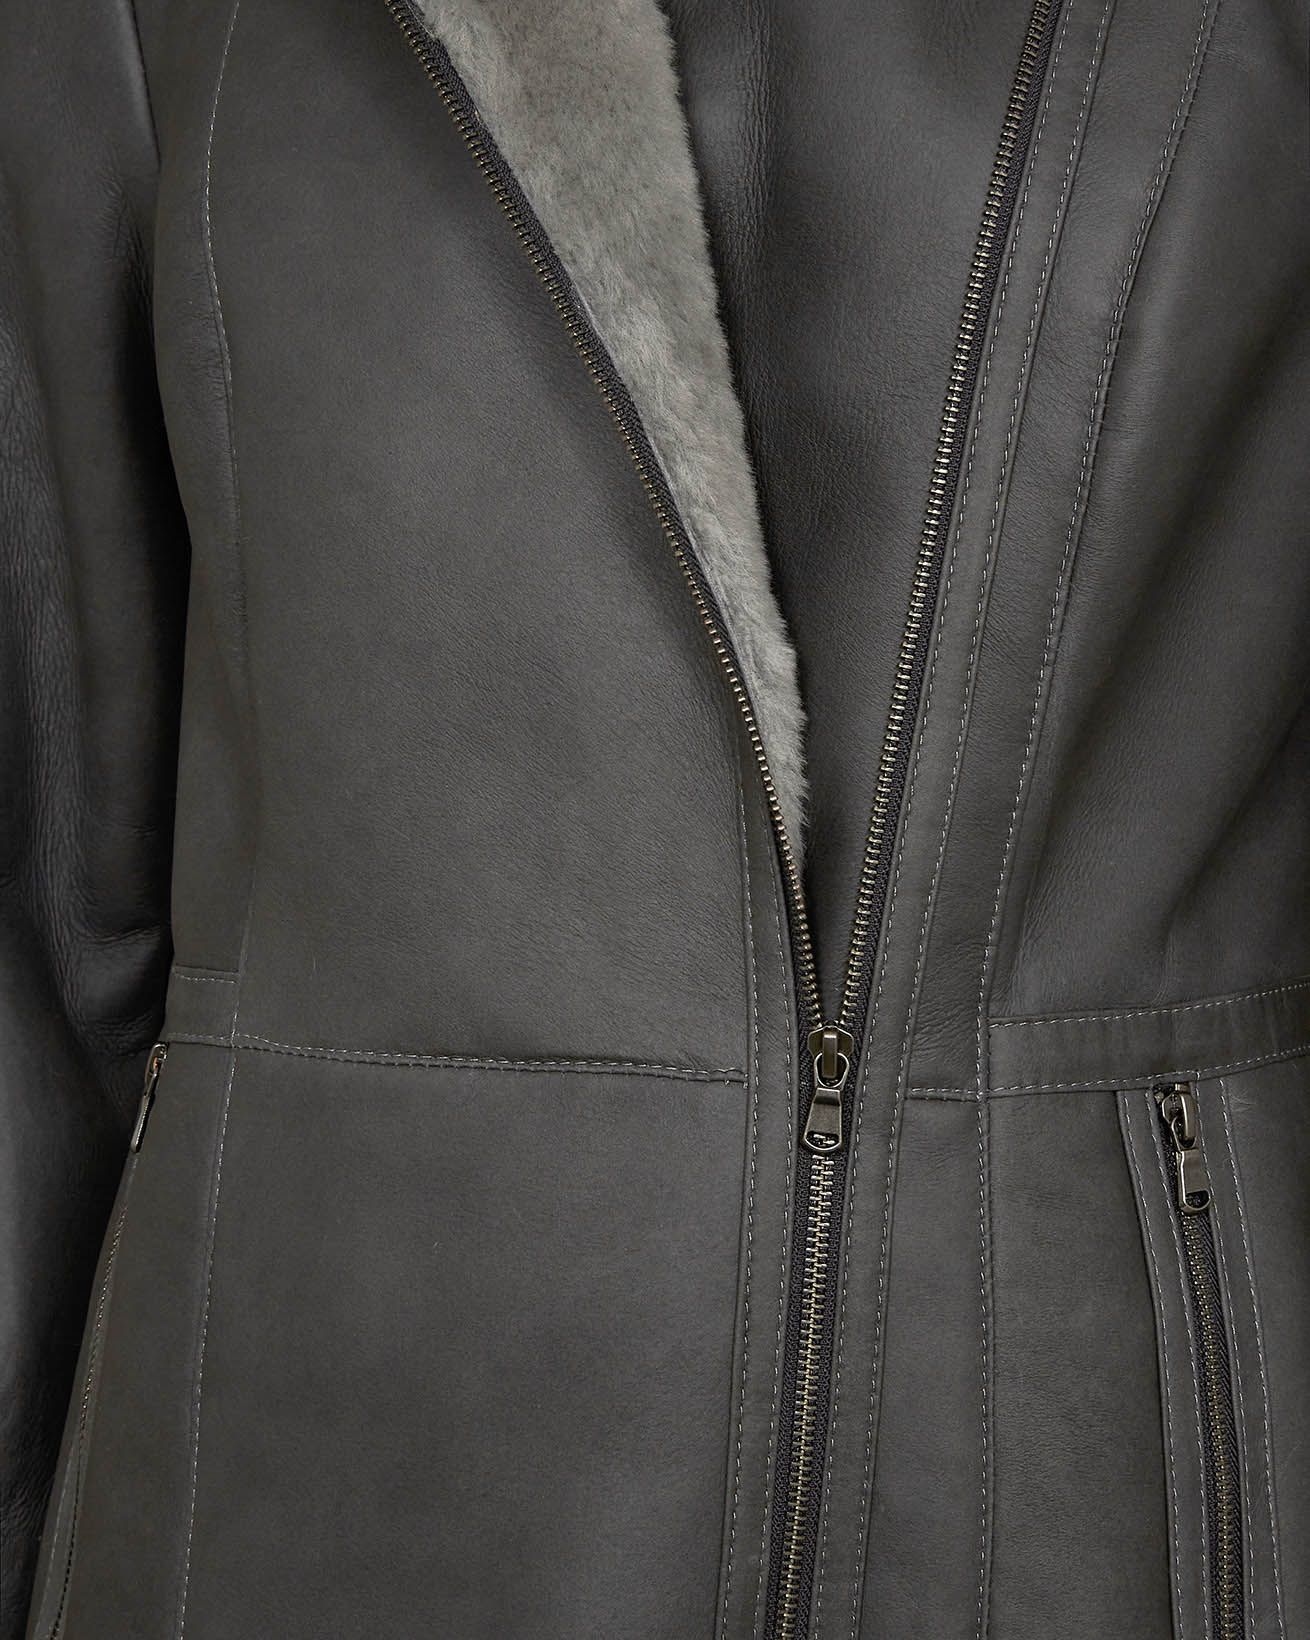 7830_hooded-zip-jacket_debry-grey_detail_cutout_web.jpg